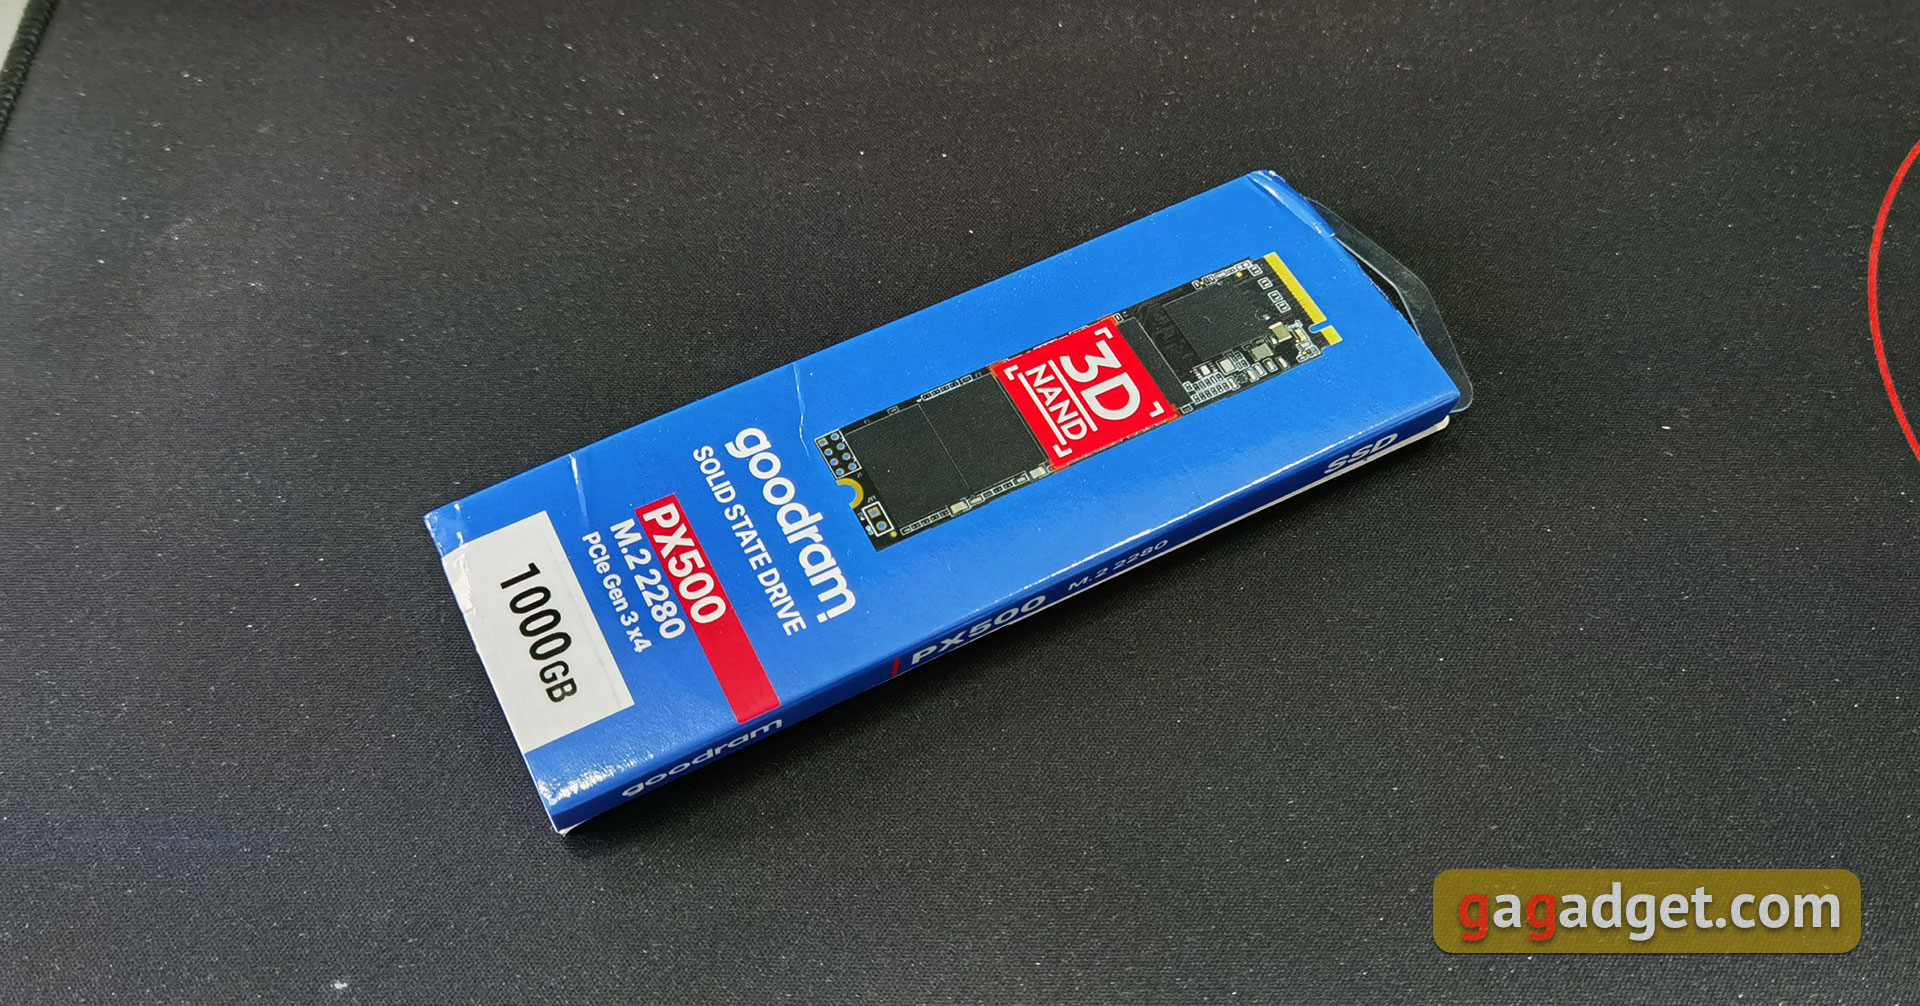 Обзор Goodram PX500: быстрый и недорогой PCIe NVMe SSD-накопитель-3